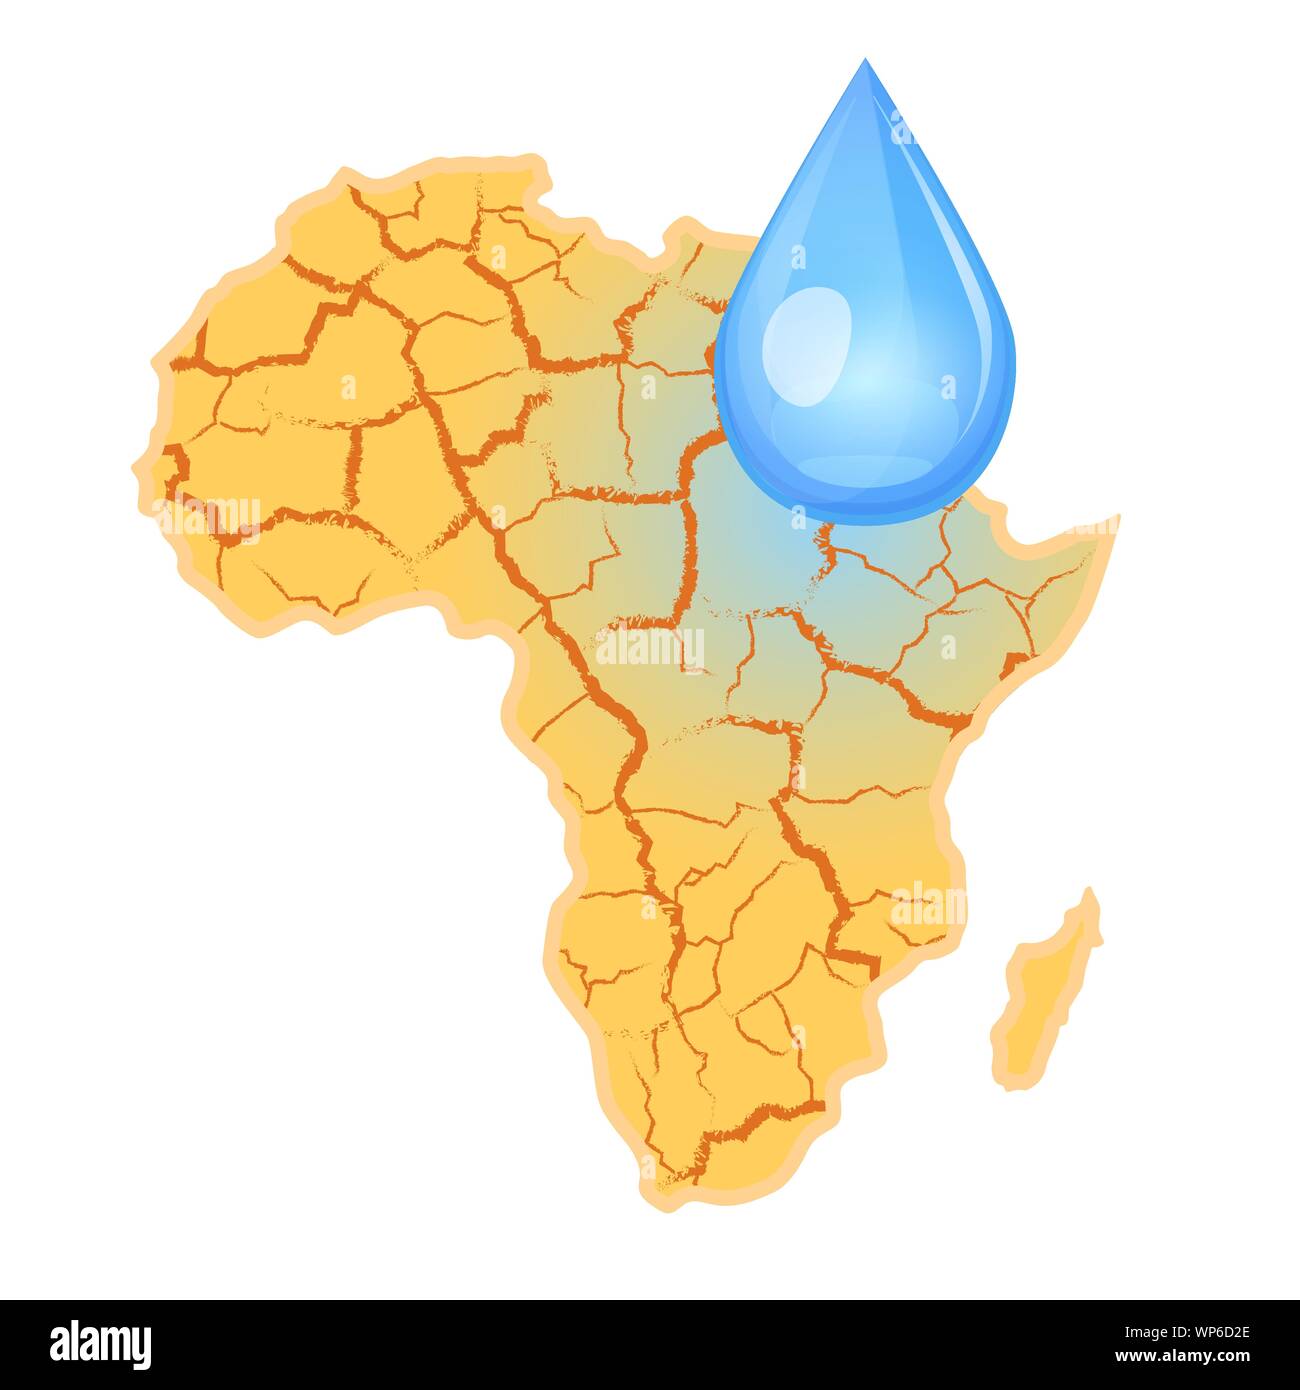 L'Afrique a besoin de l'eau. Concept de la rareté de l'eau. La sécheresse en Afrique et une goutte d'eau. Illustration vectorielle, isolé sur fond blanc. Illustration de Vecteur